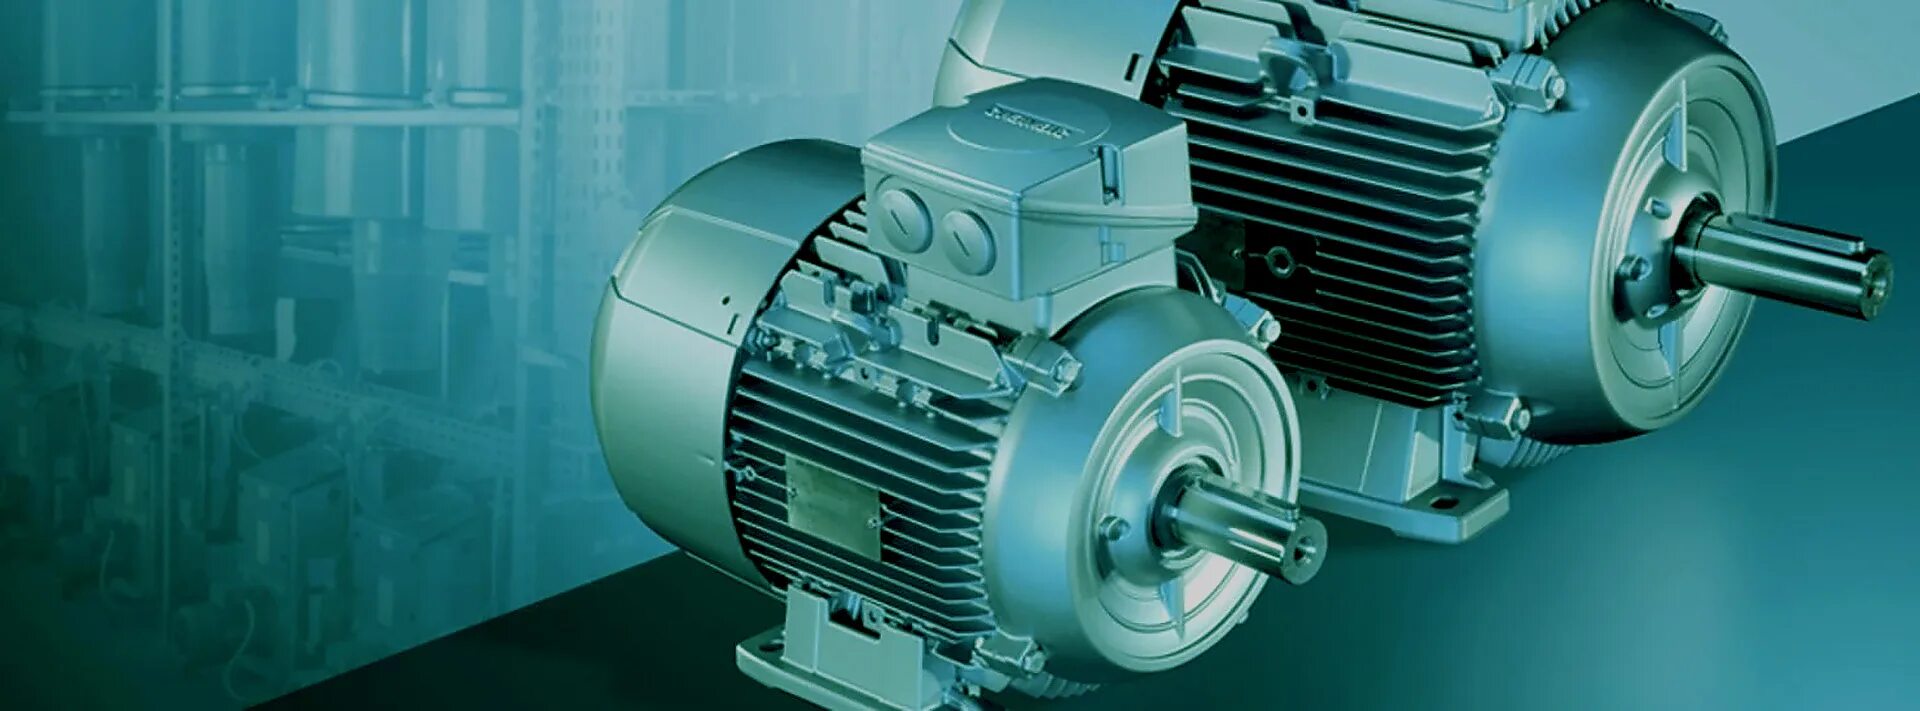 Асинхронные электродвигатели Siemens 1ph6. Электродвигатели азо, 400/6000. Электромотор промышленный. Производители электродвигателей.